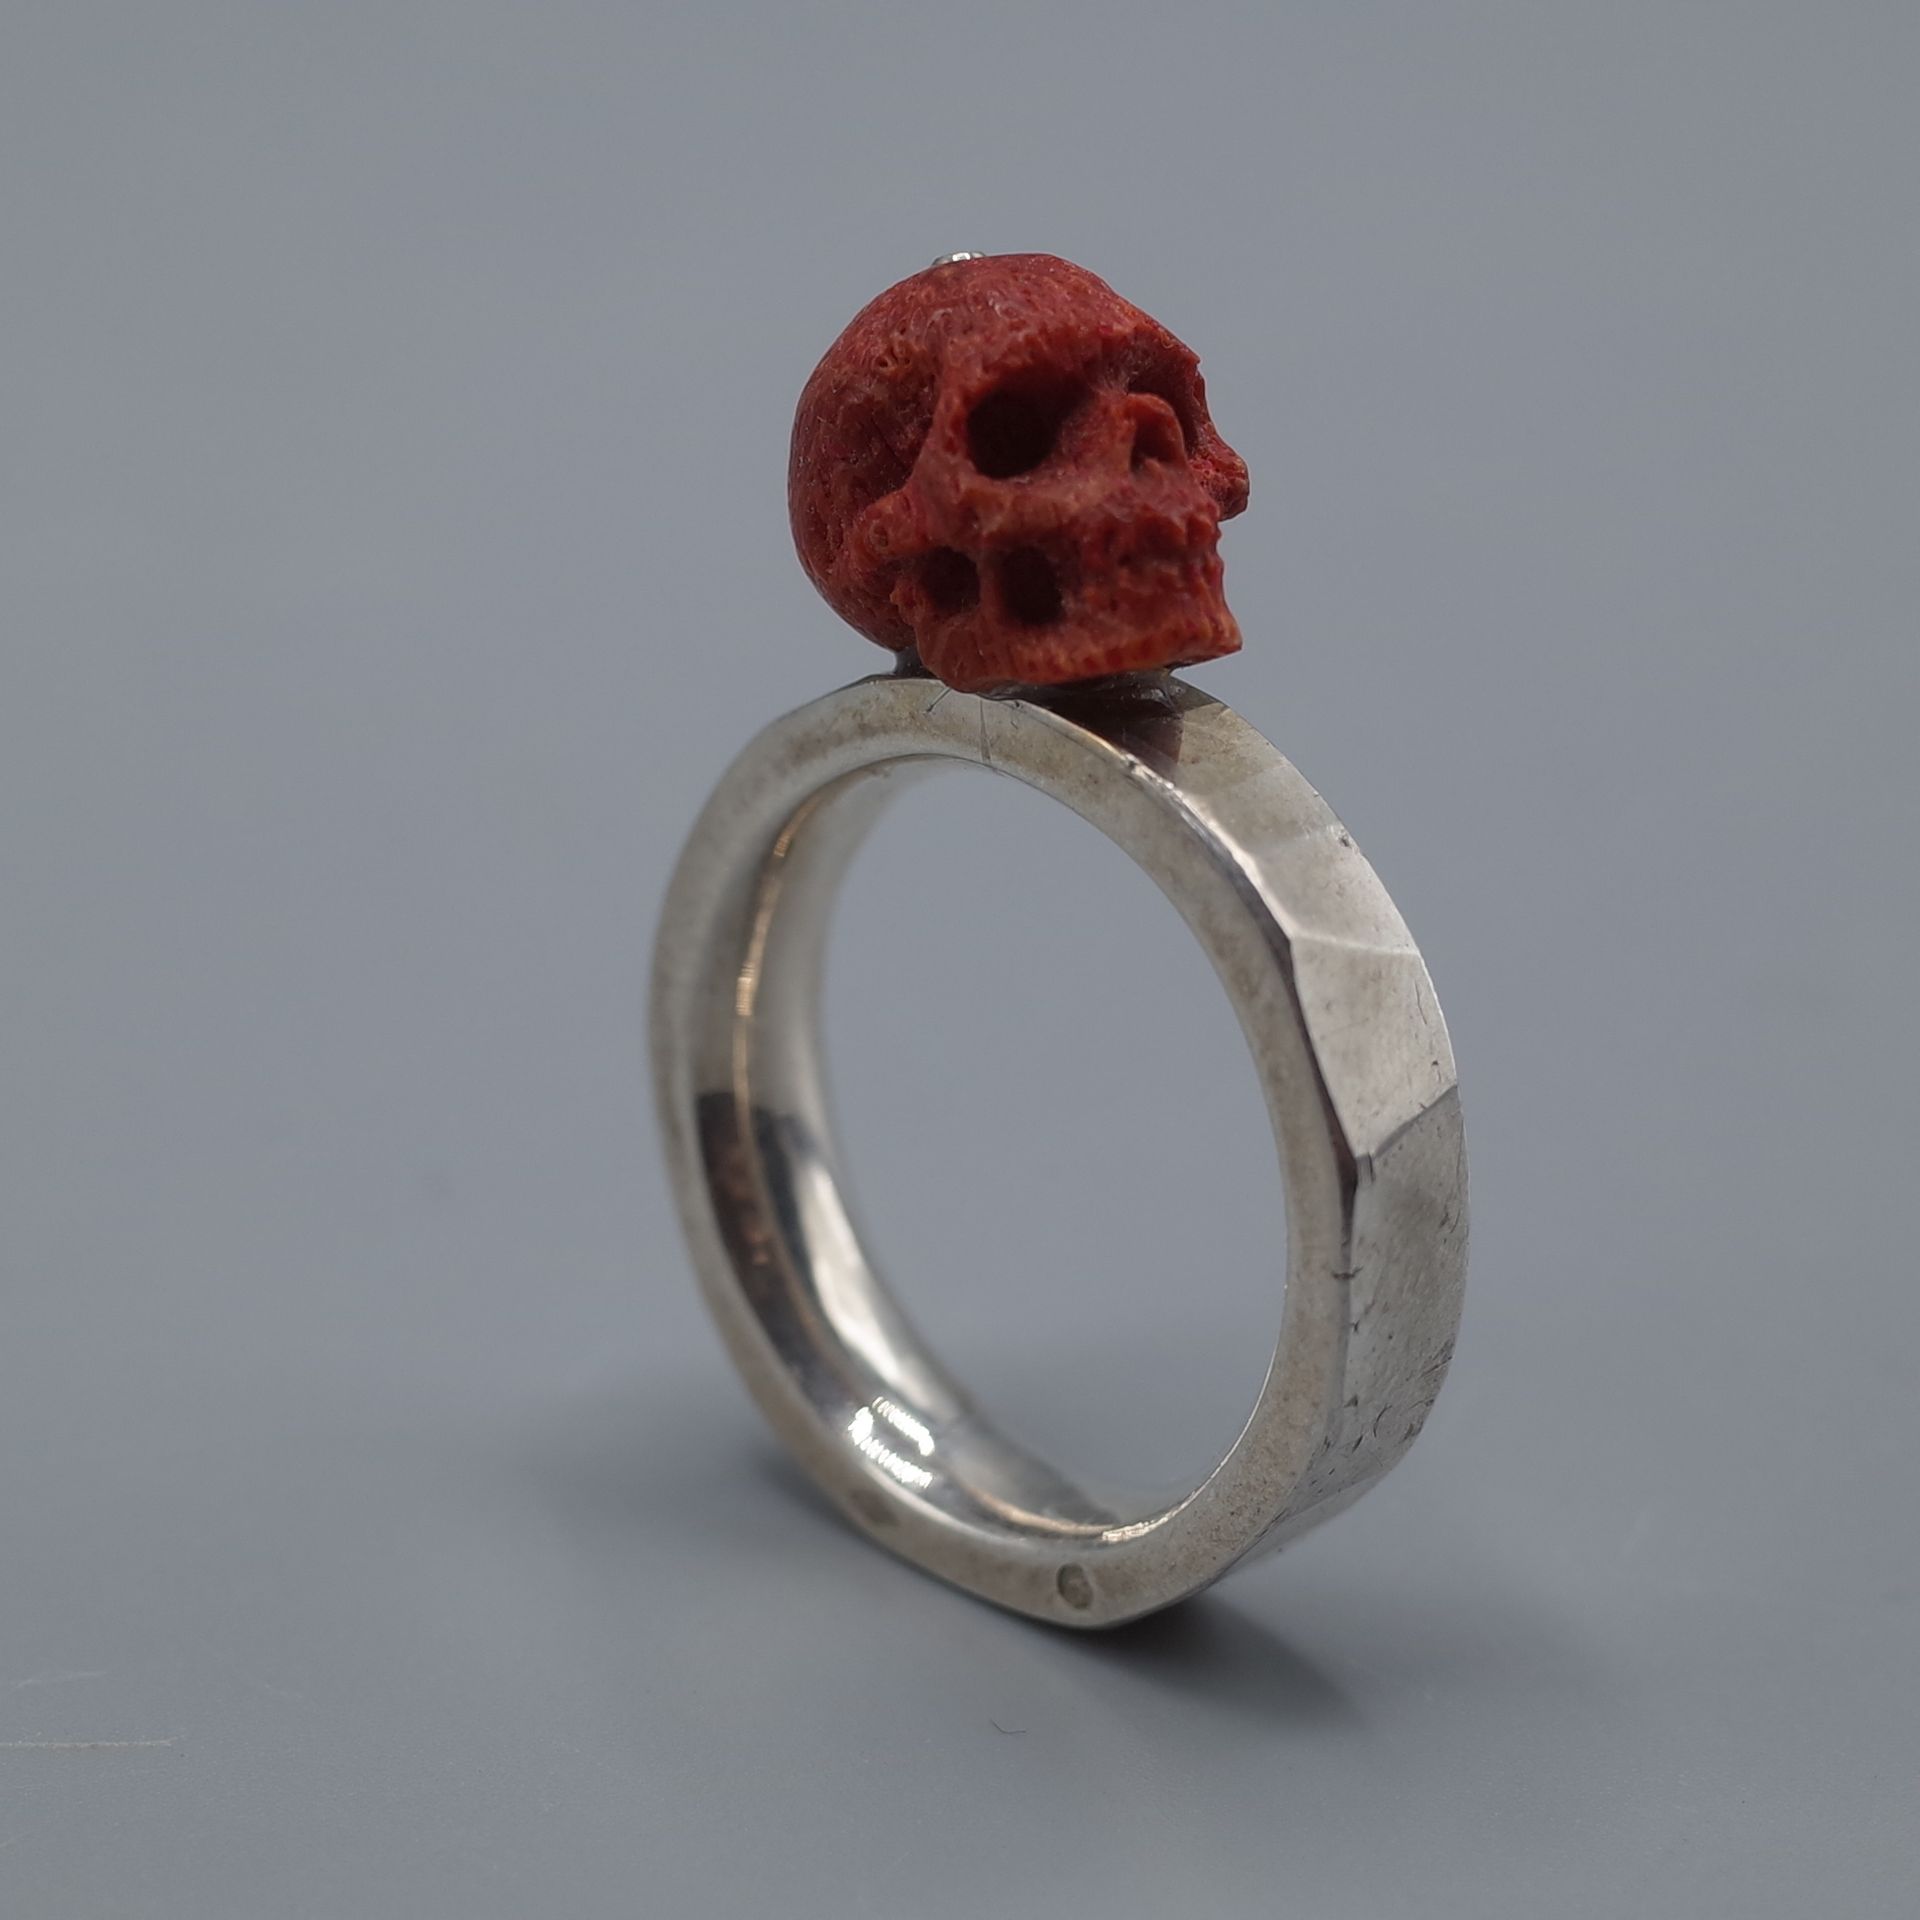 Null 镶嵌有切割红珊瑚的骷髅头和十字骨的银戒指

毛重：12.2克 - 手指大小：63